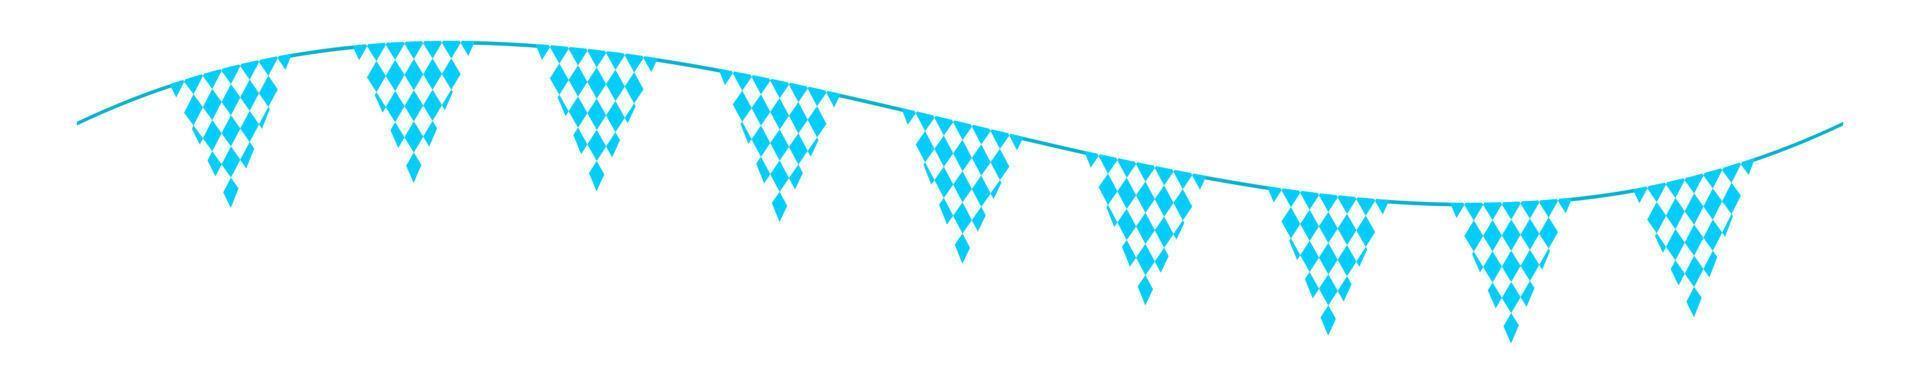 oktoberfest flaggväv med triangel flaggor på vinka sträng. krans för tysk öl festival med blå och vit romb mönster. dekoration för baner, flygblad, kort, affisch vektor